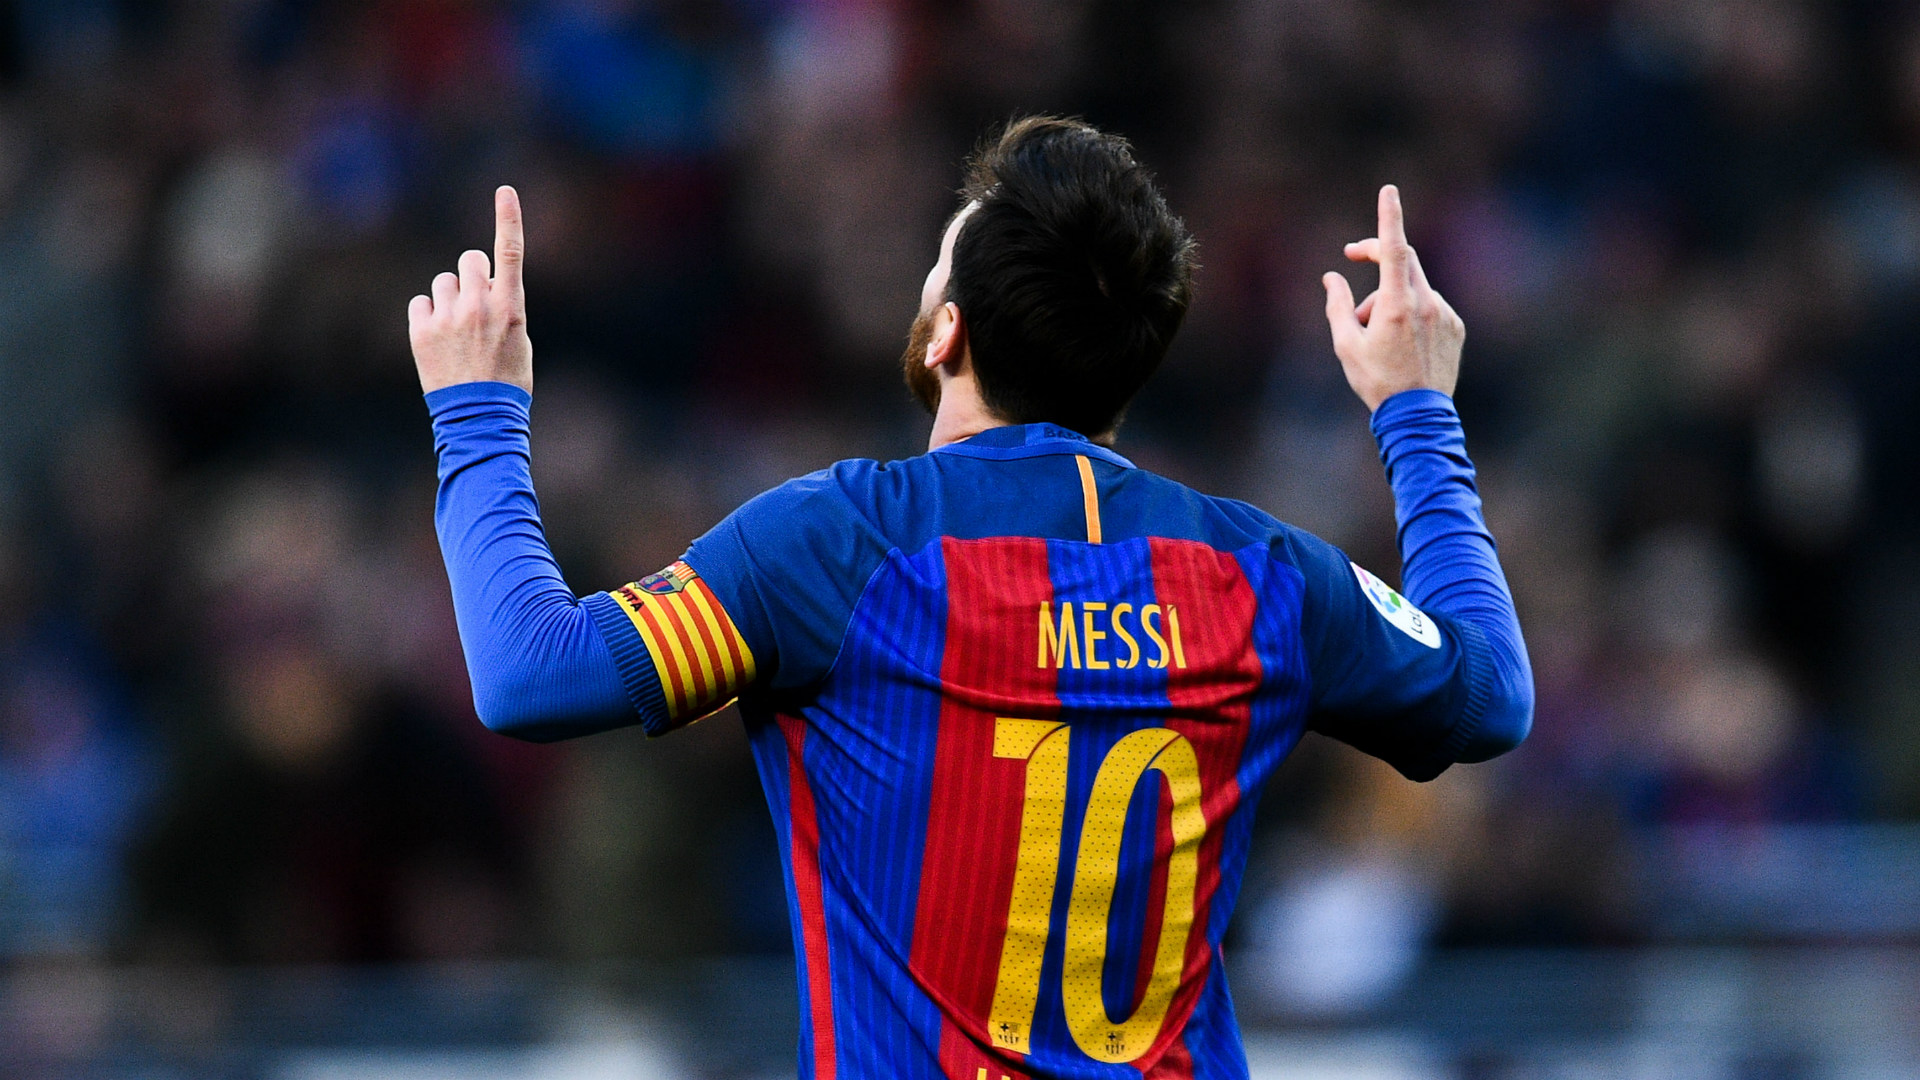 Messi luôn là một cầu thủ chuyên nghiệp và tài năng. Với hình nền Messi goalscoring stat, bạn sẽ có cơ hội để truy cập đến những số liệu thống kê phong phú của anh. Điều này sẽ giúp bạn hiểu rõ hơn về khả năng và sự nghiệp của cầu thủ này.